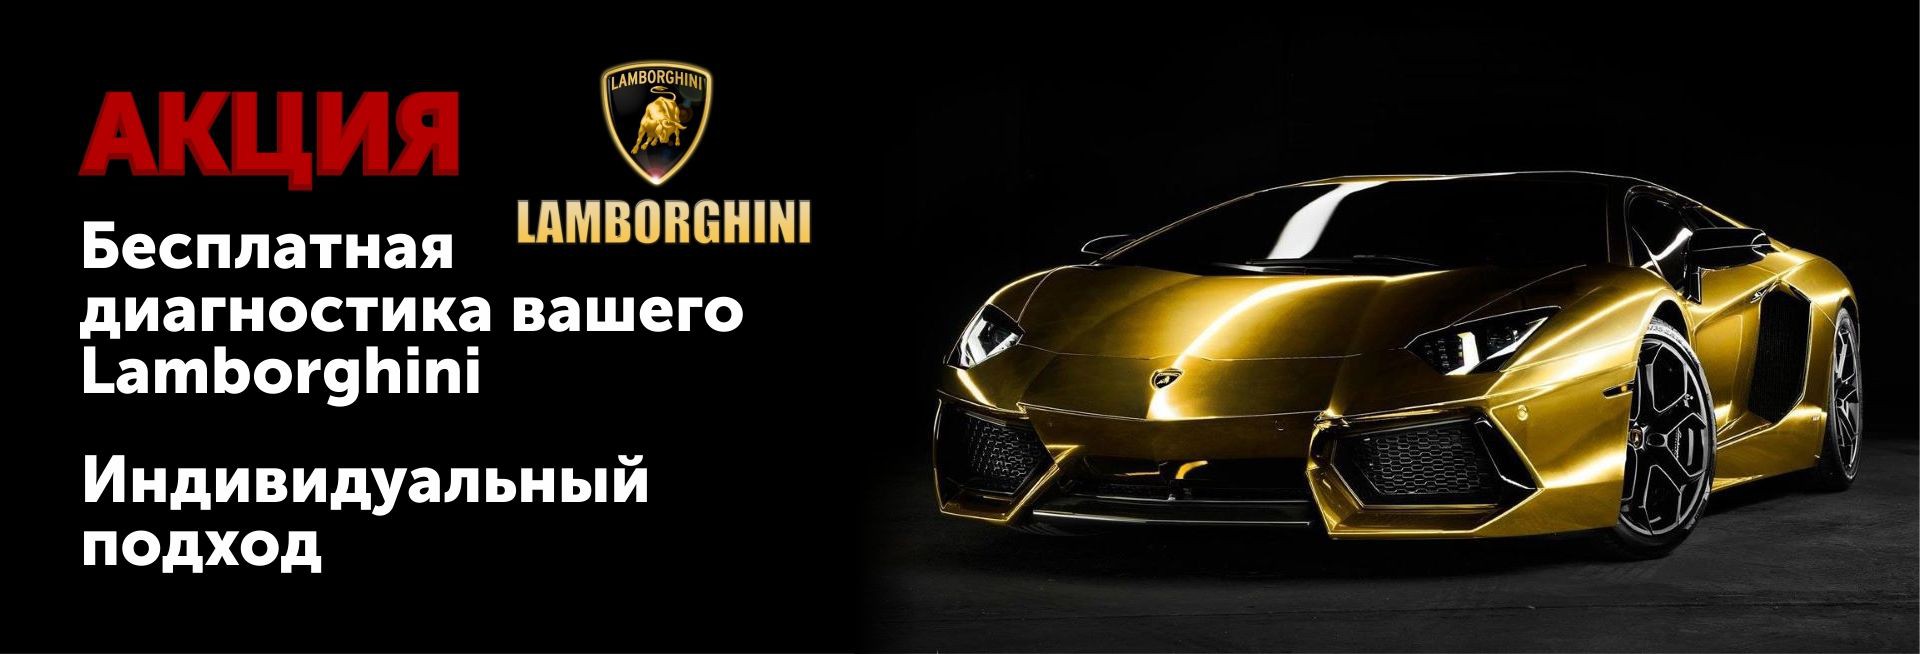 .Акция: Бесплатная диагностика вашего Lamborghini